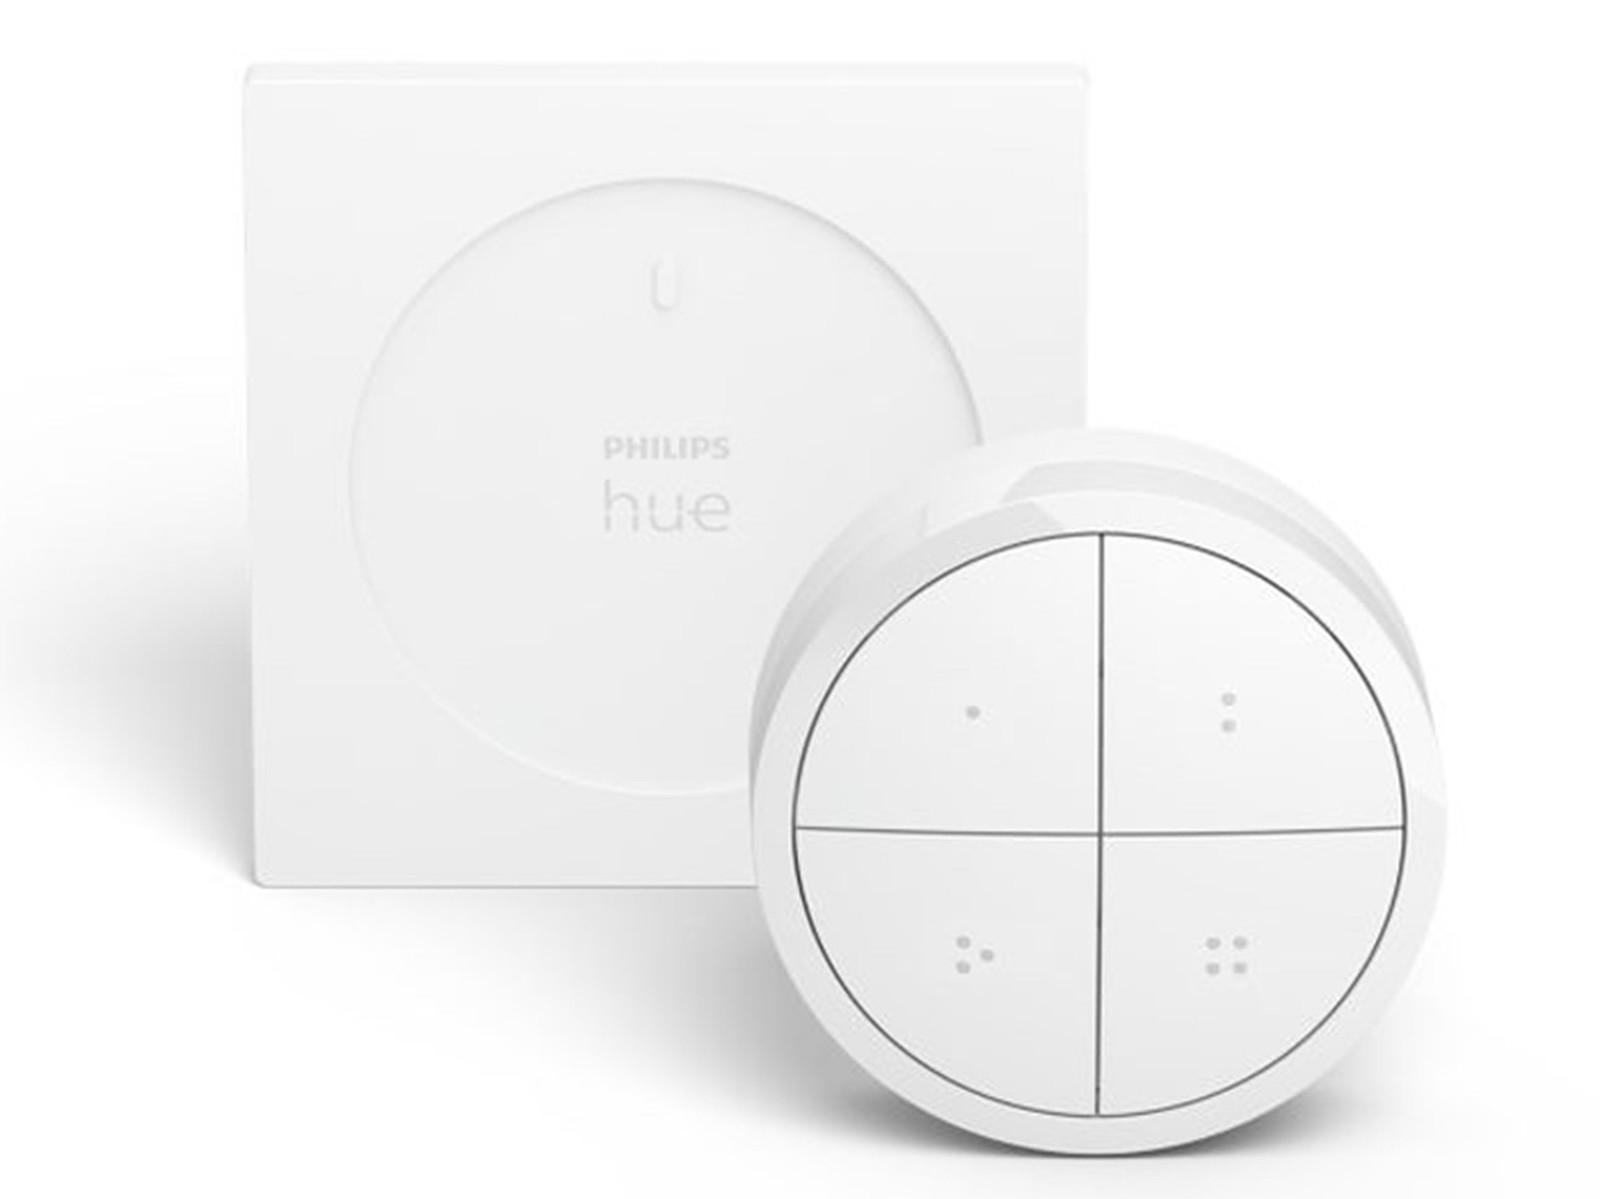 Philips Hue annuncia tre nuovi prodotti per la casa smart